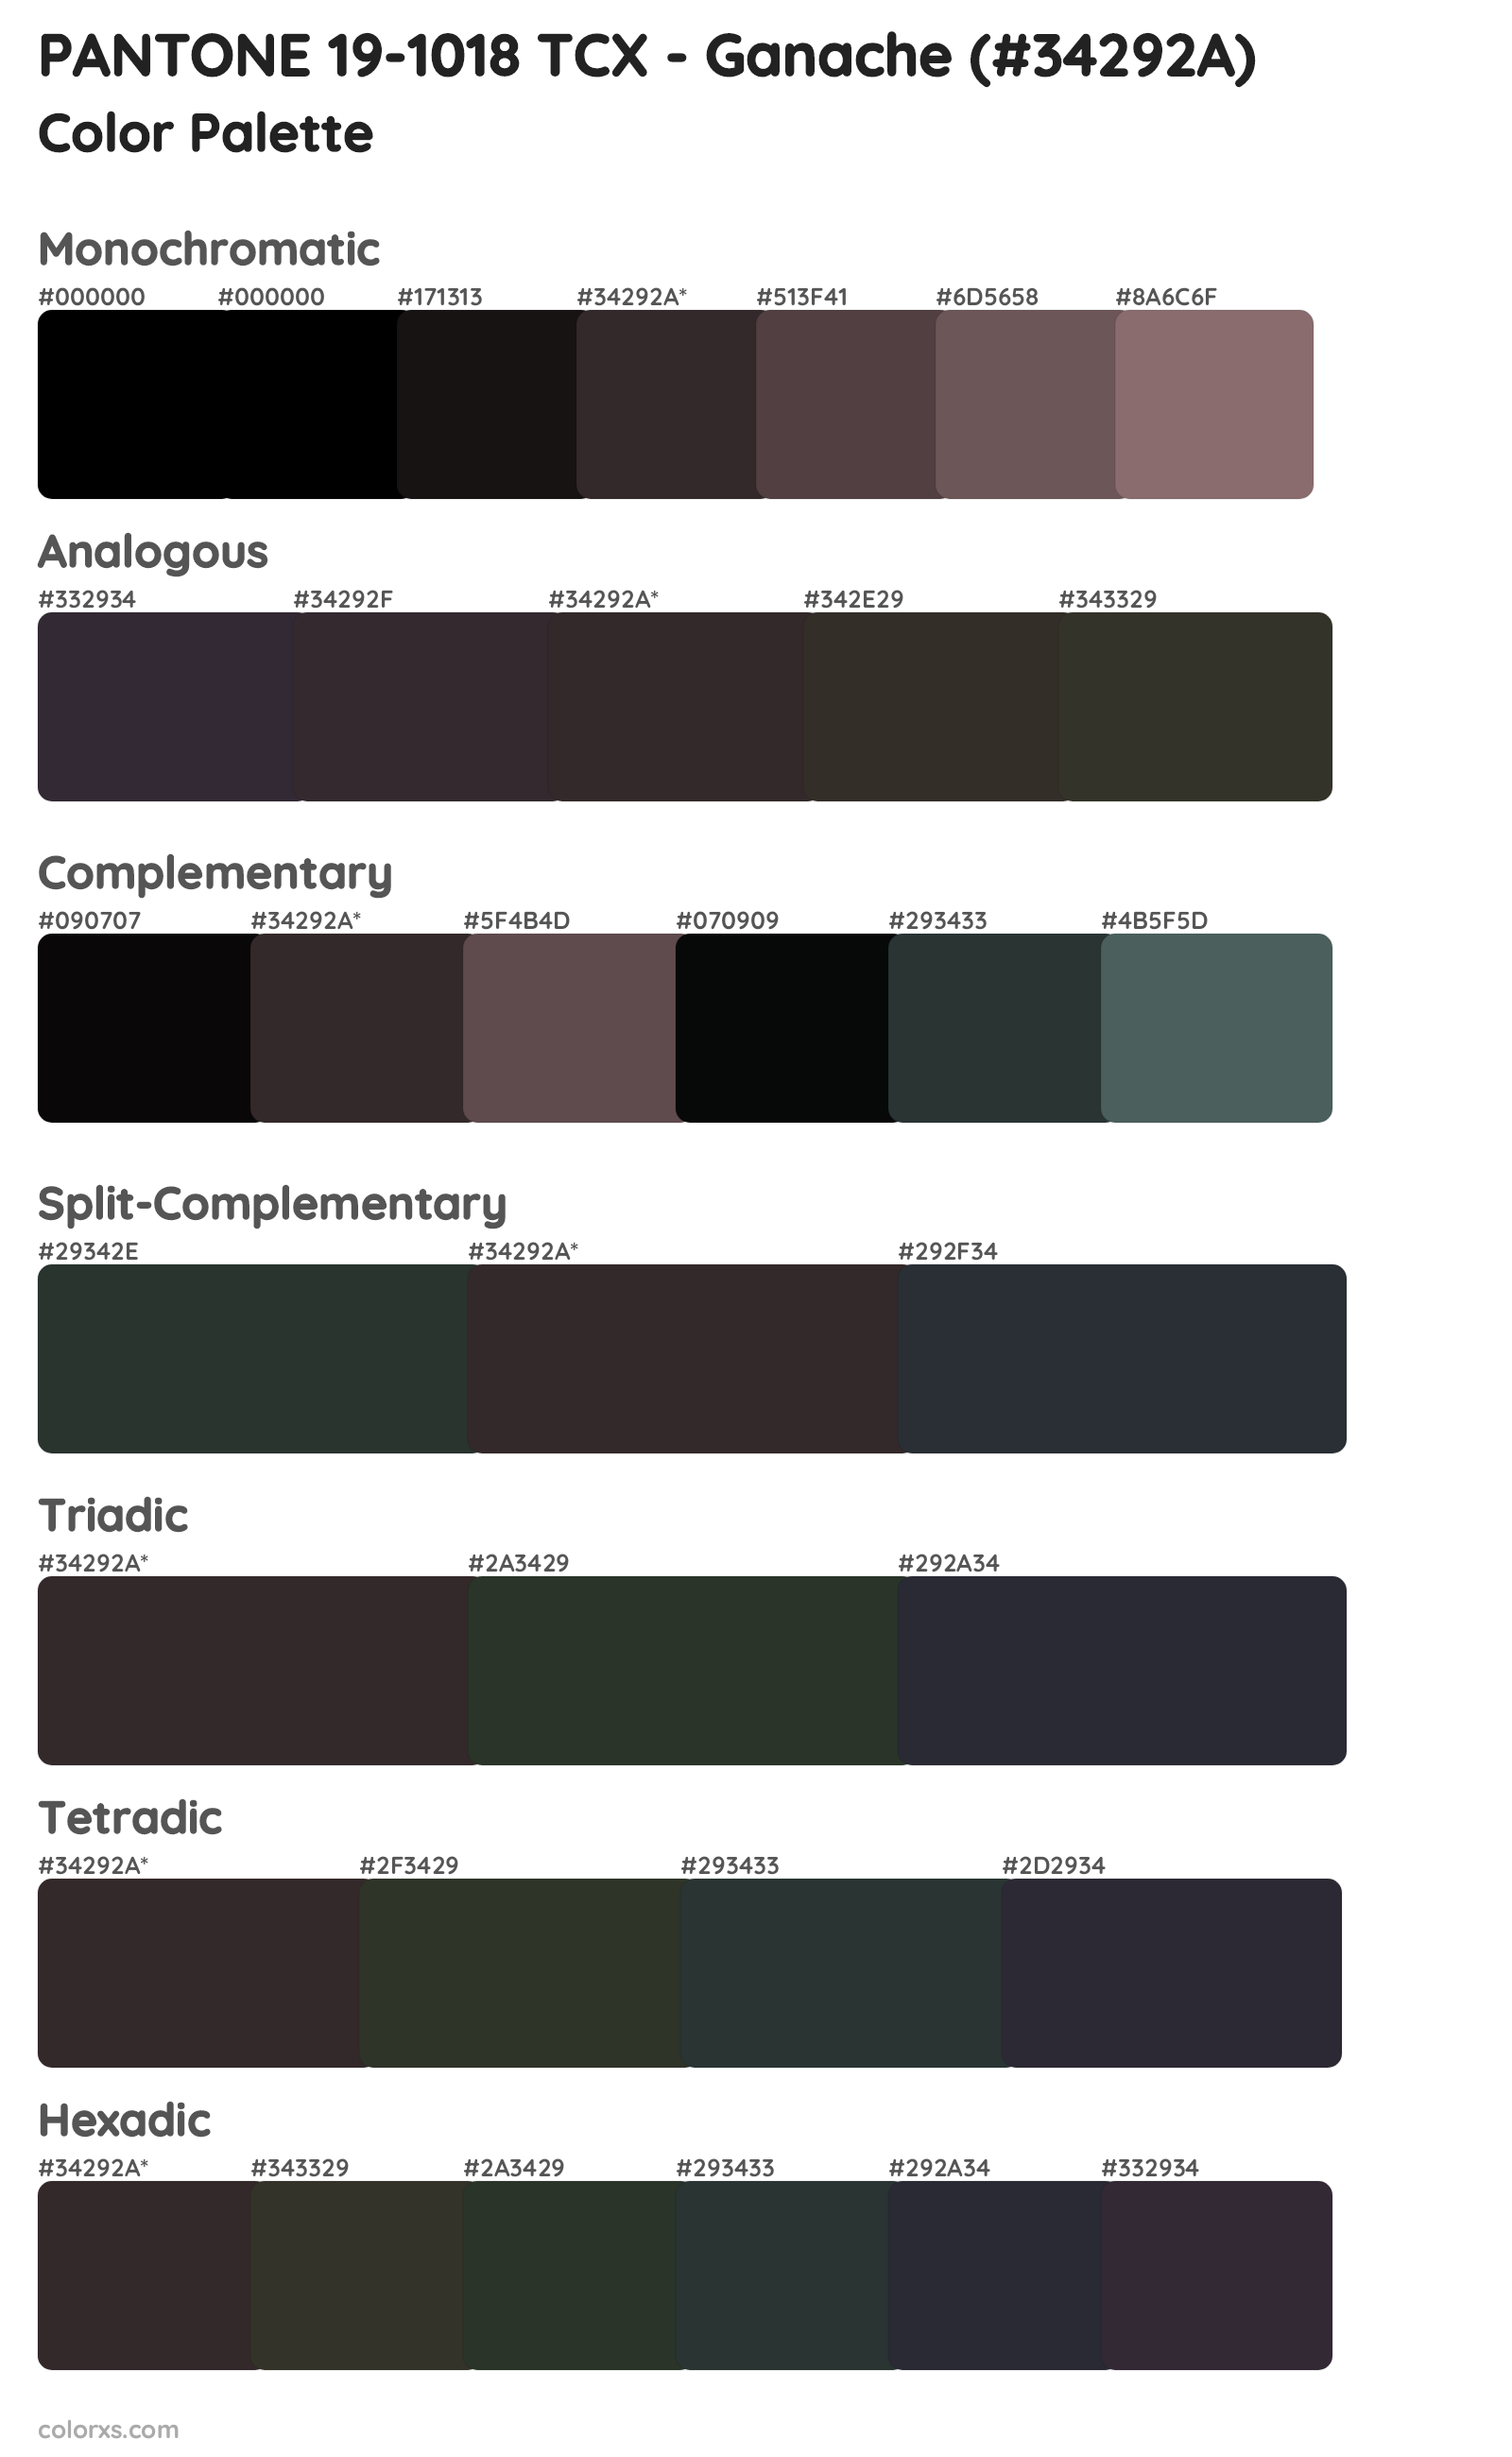 PANTONE 19-1018 TCX - Ganache Color Scheme Palettes